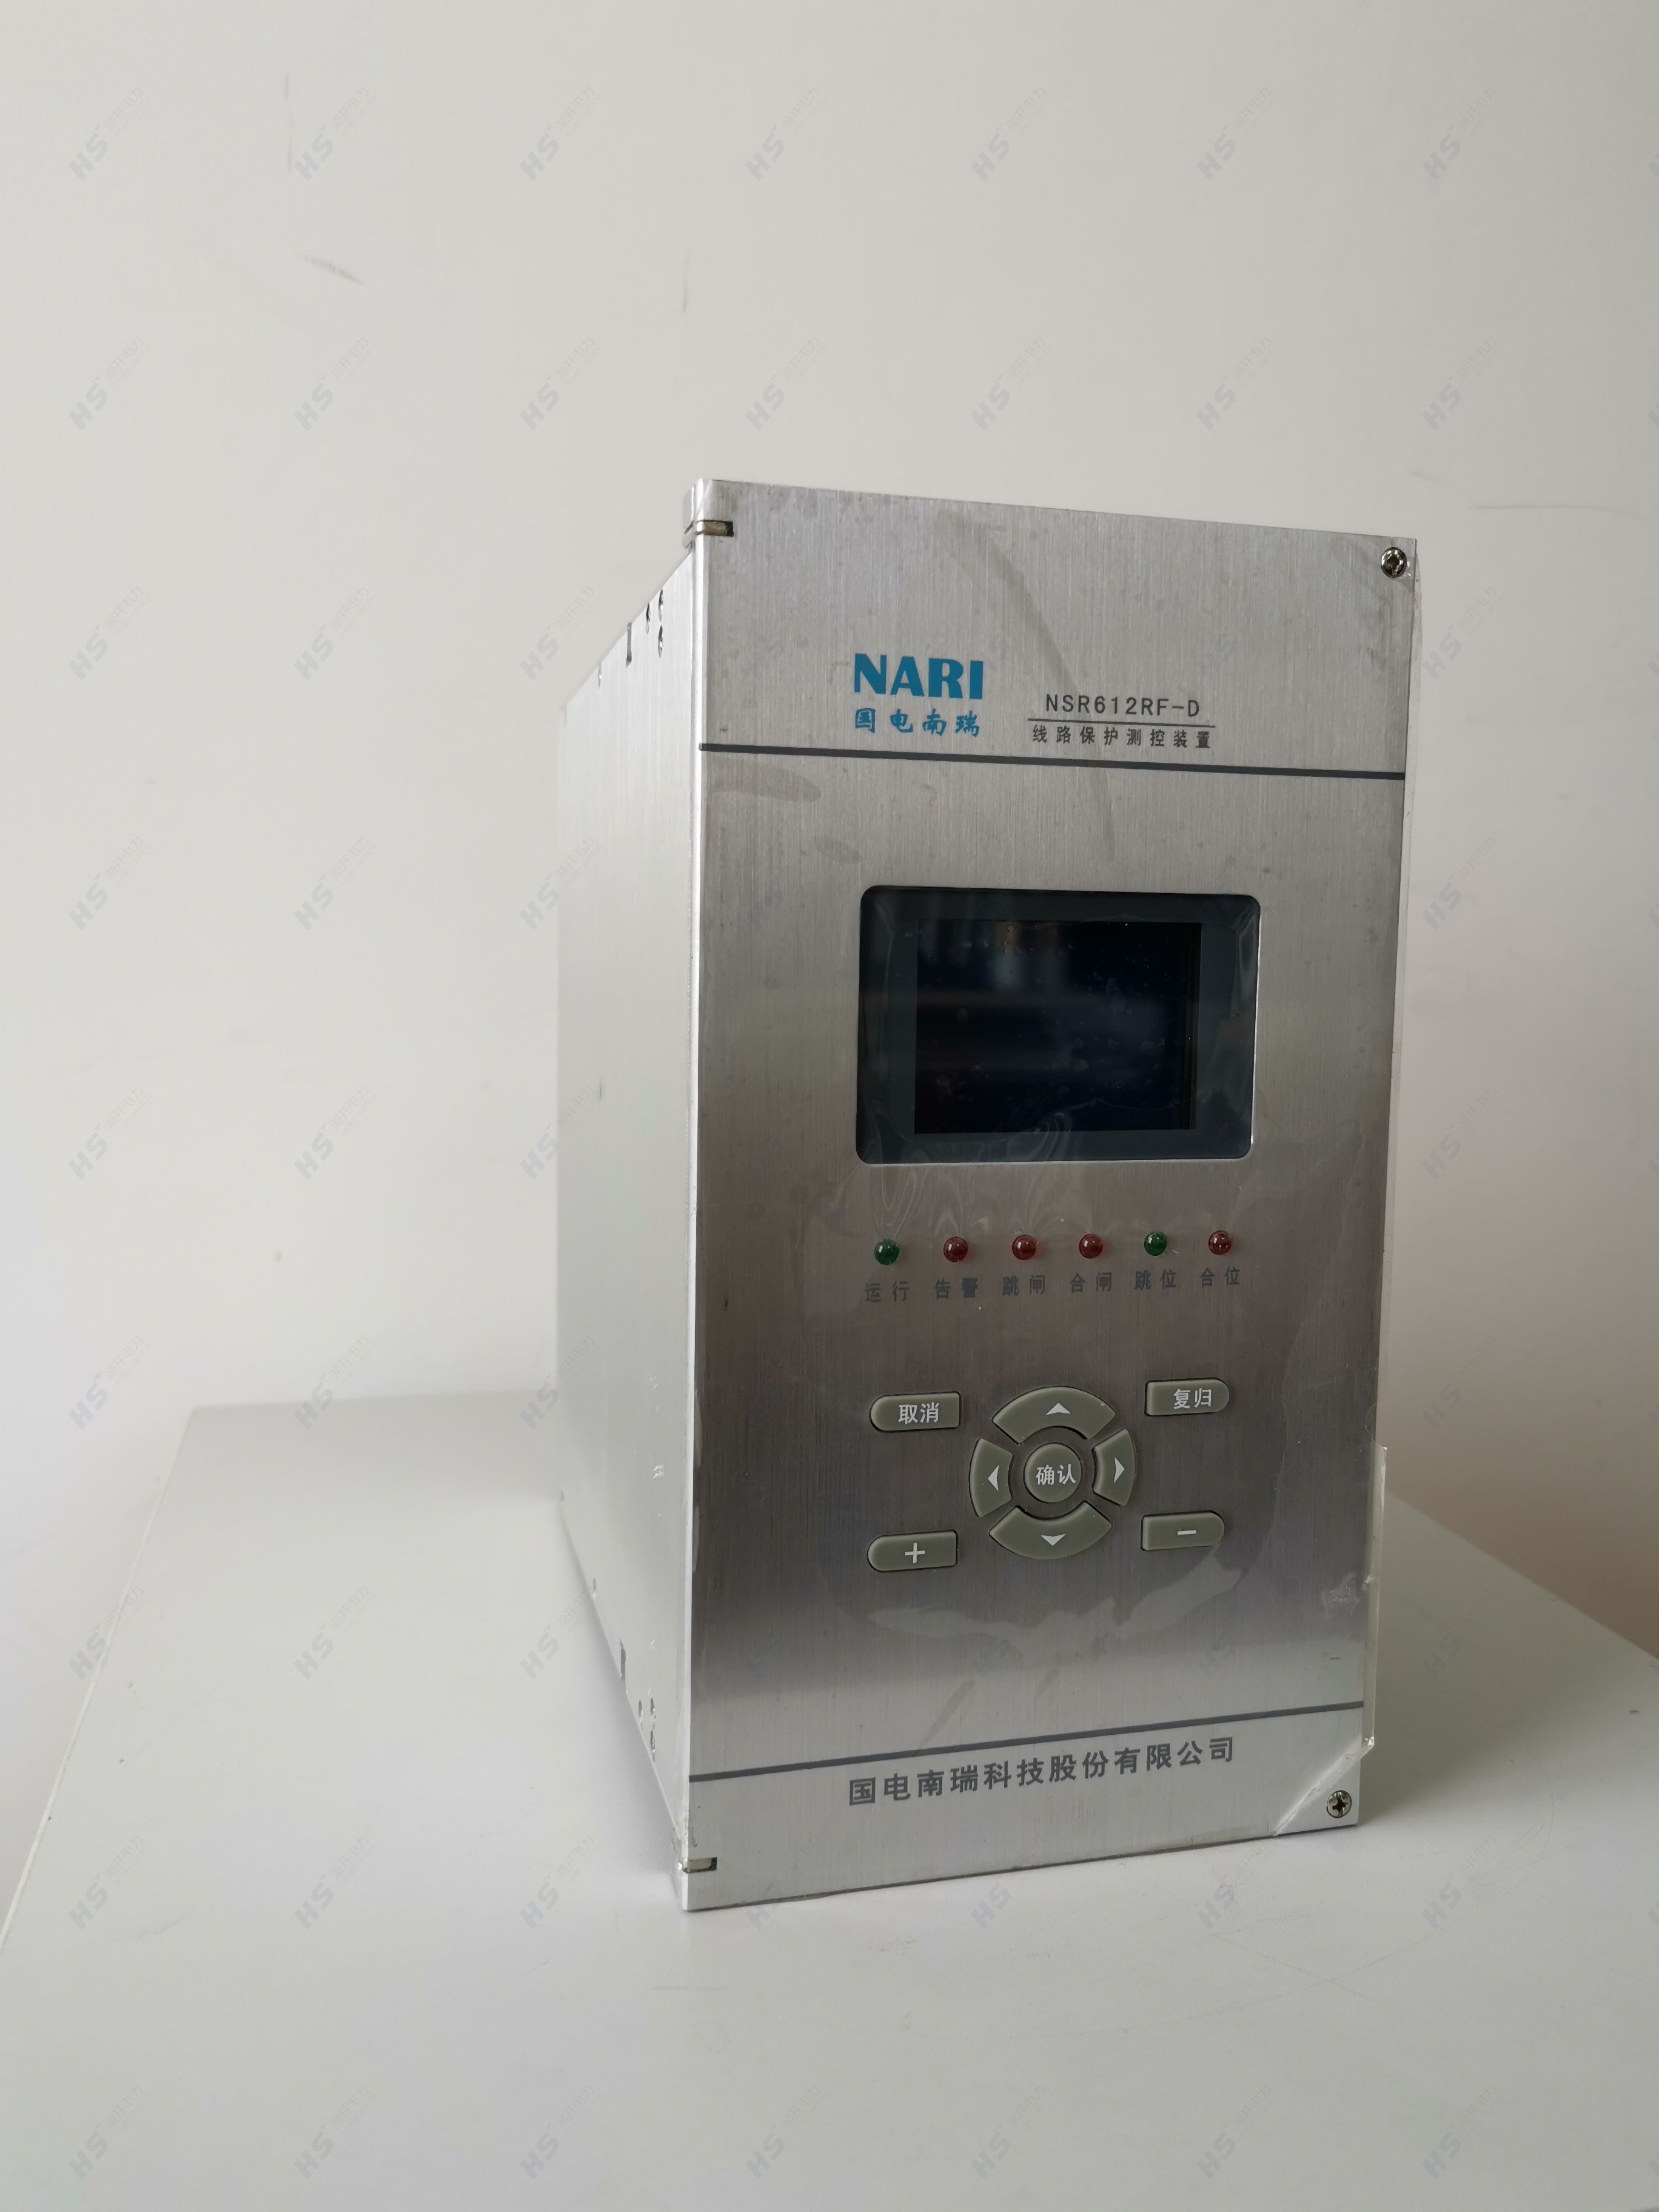 国电南瑞NSR621RF-D电容器保护测控装置